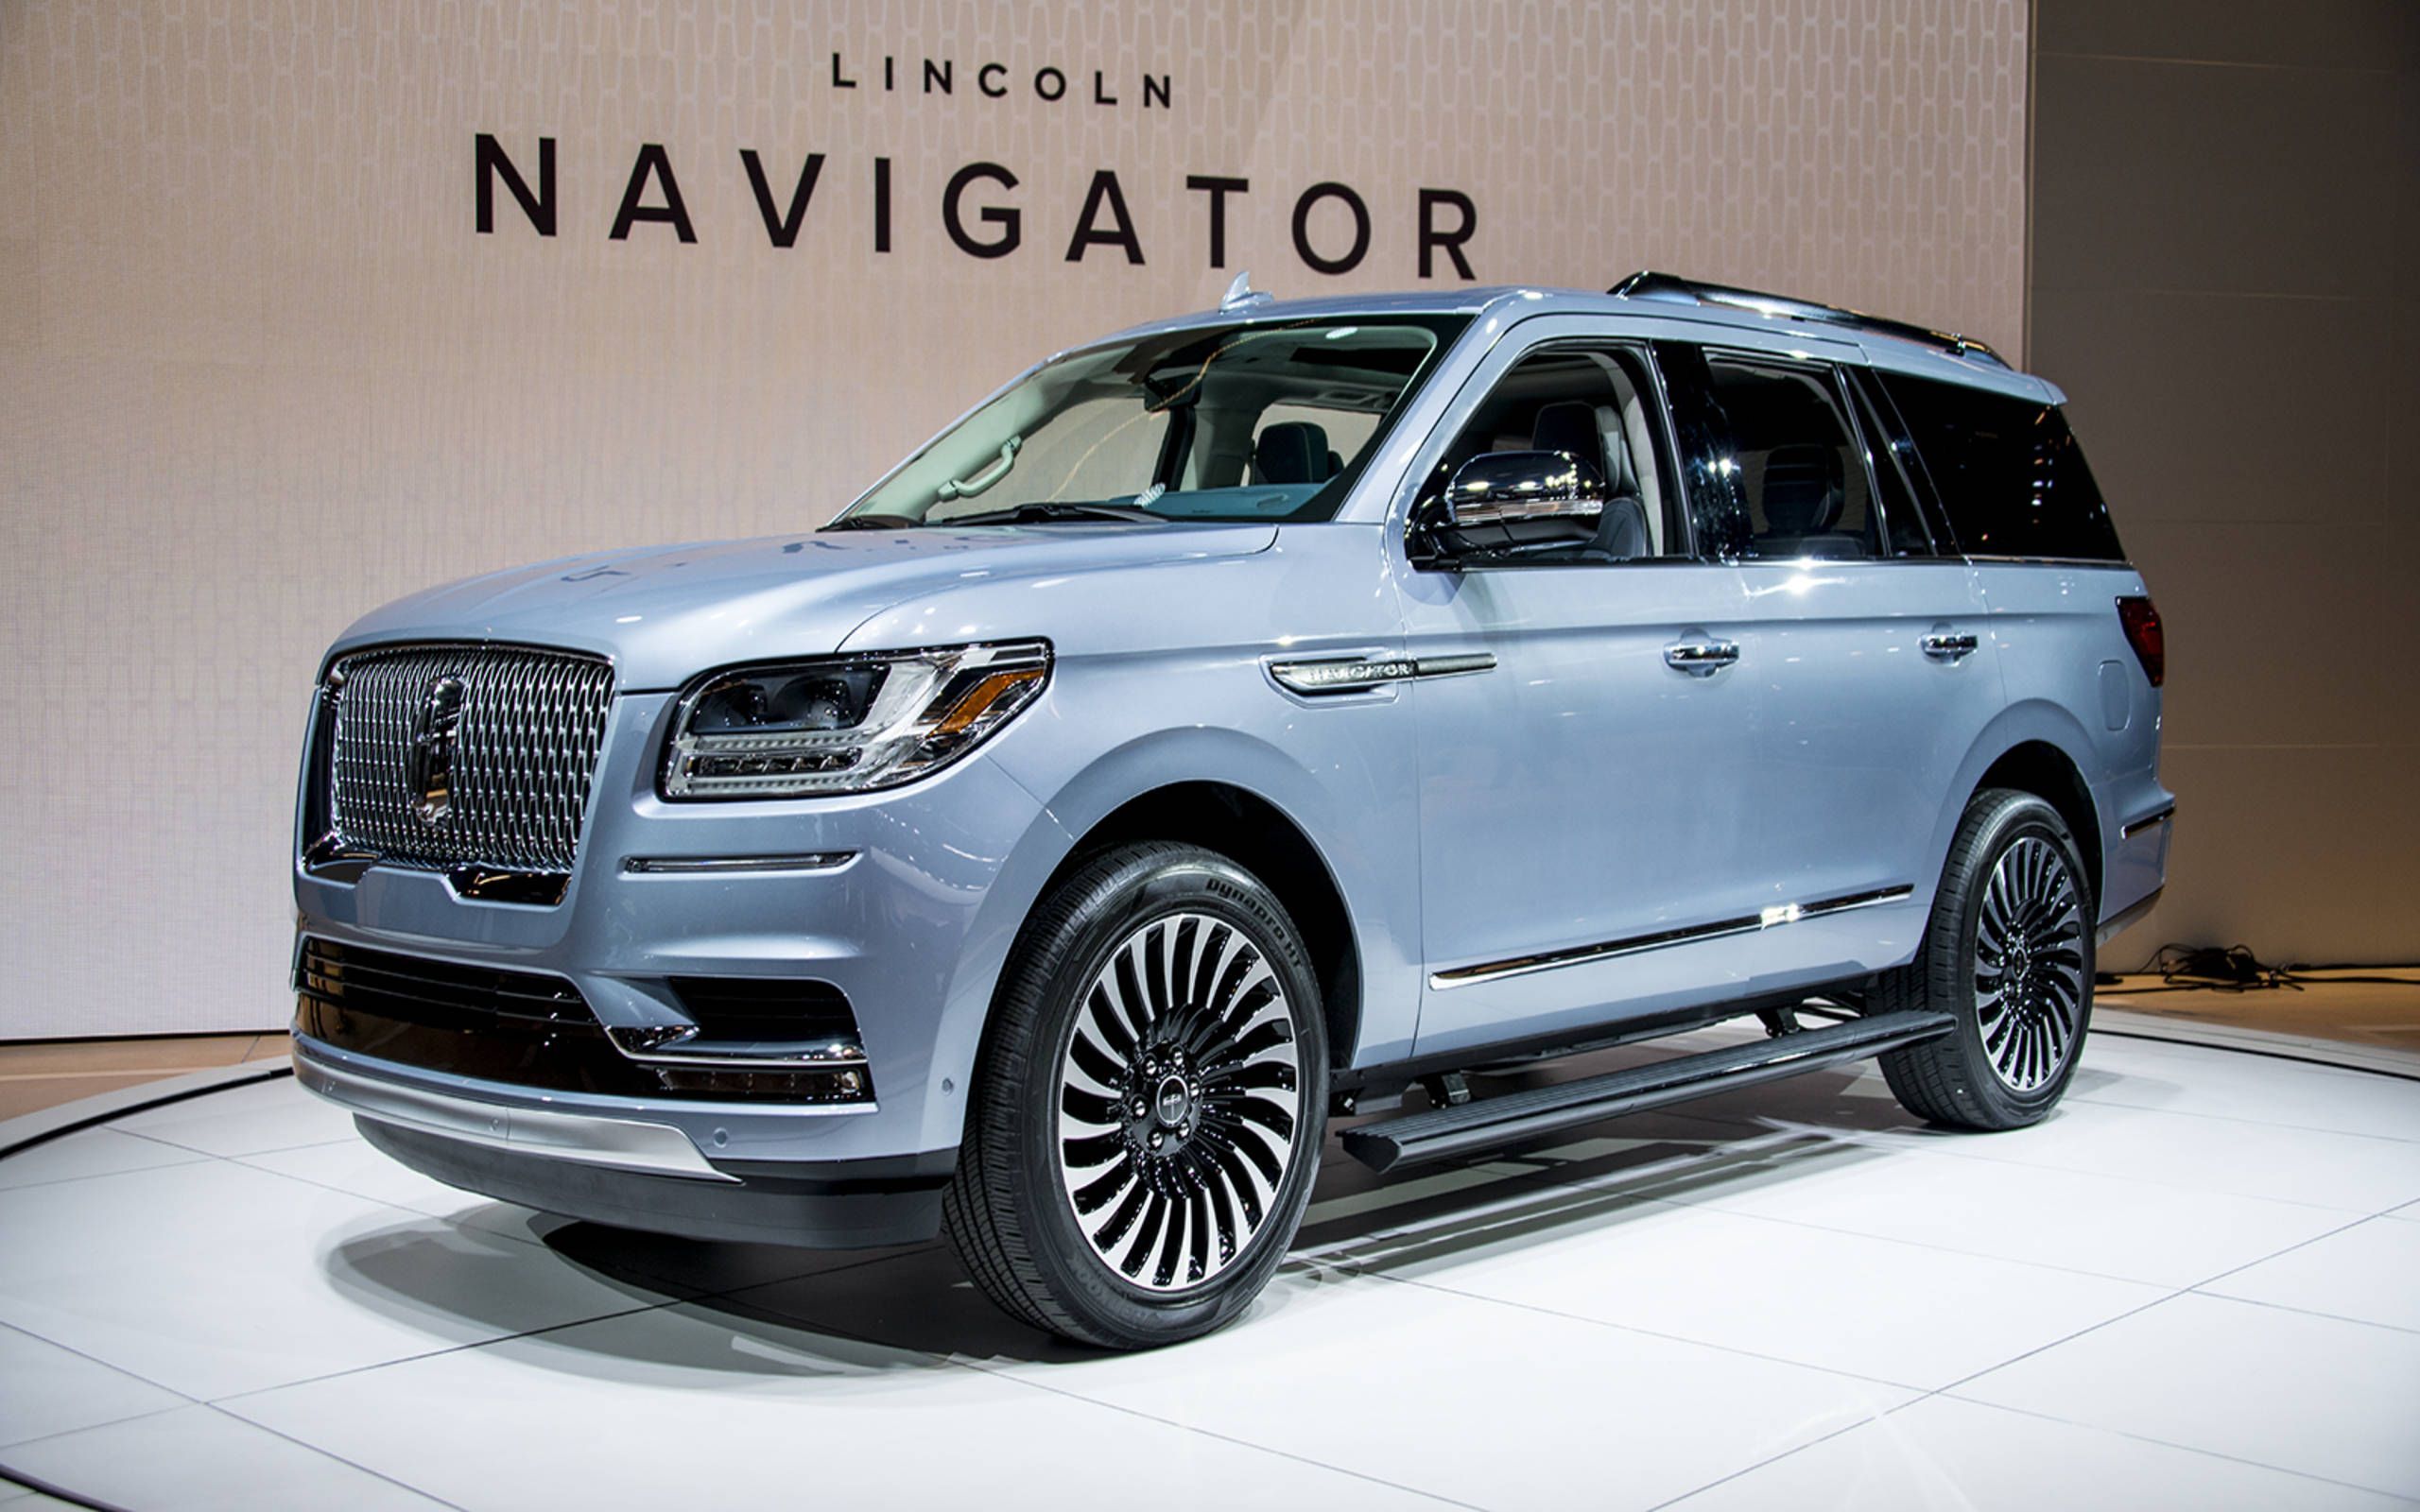 Lincoln Navigator,